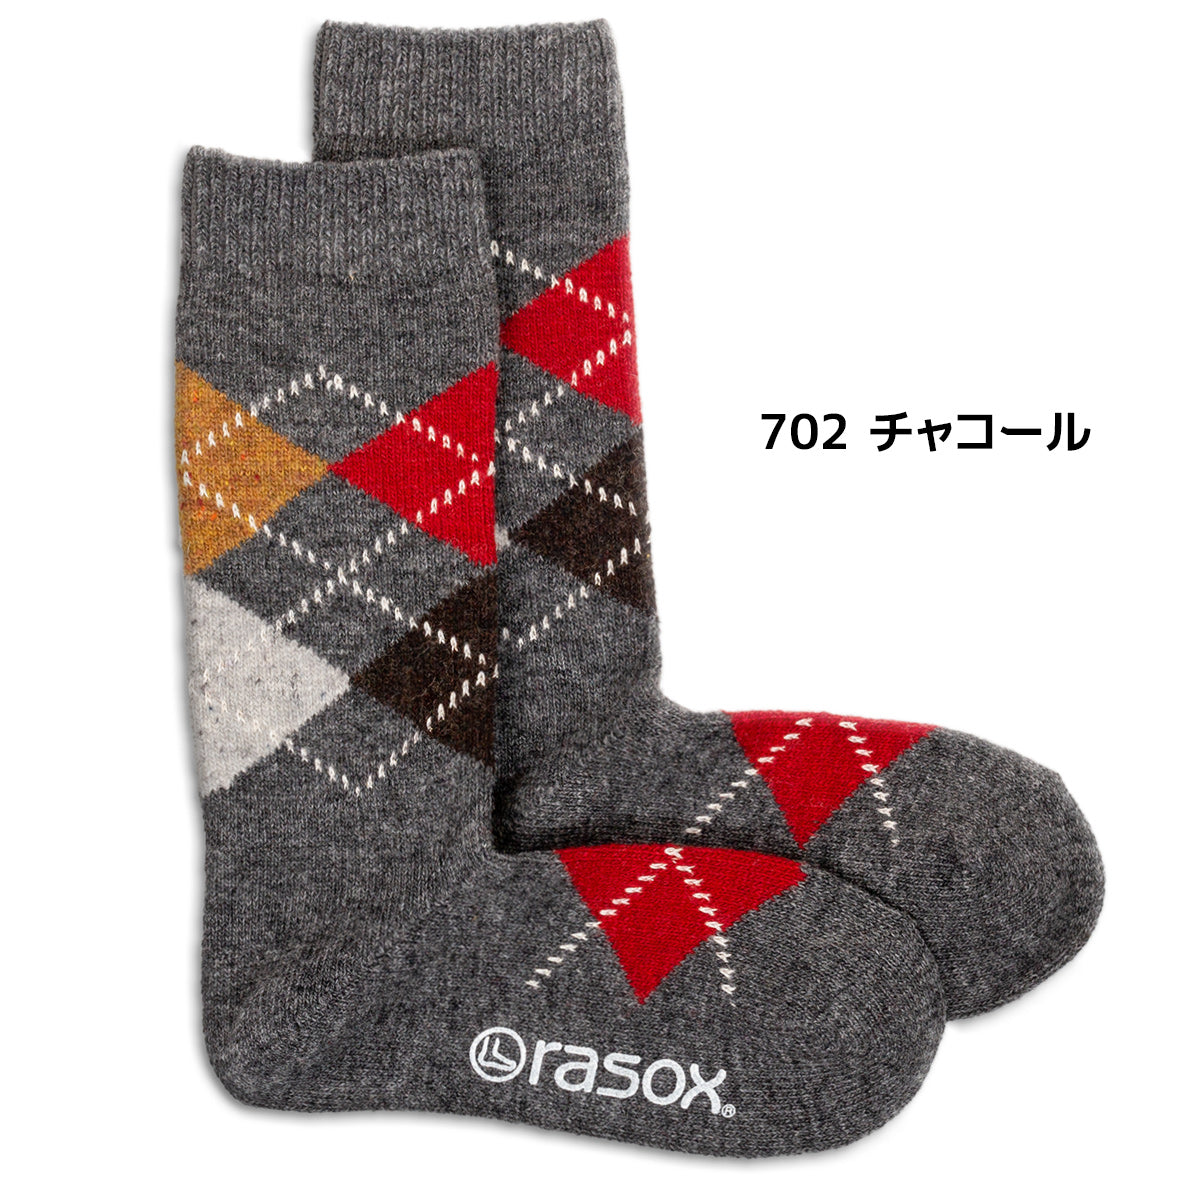 rasox/ラソックス/靴下/ウールソックス/クルーソックス/アーガイルウール/702チャコール